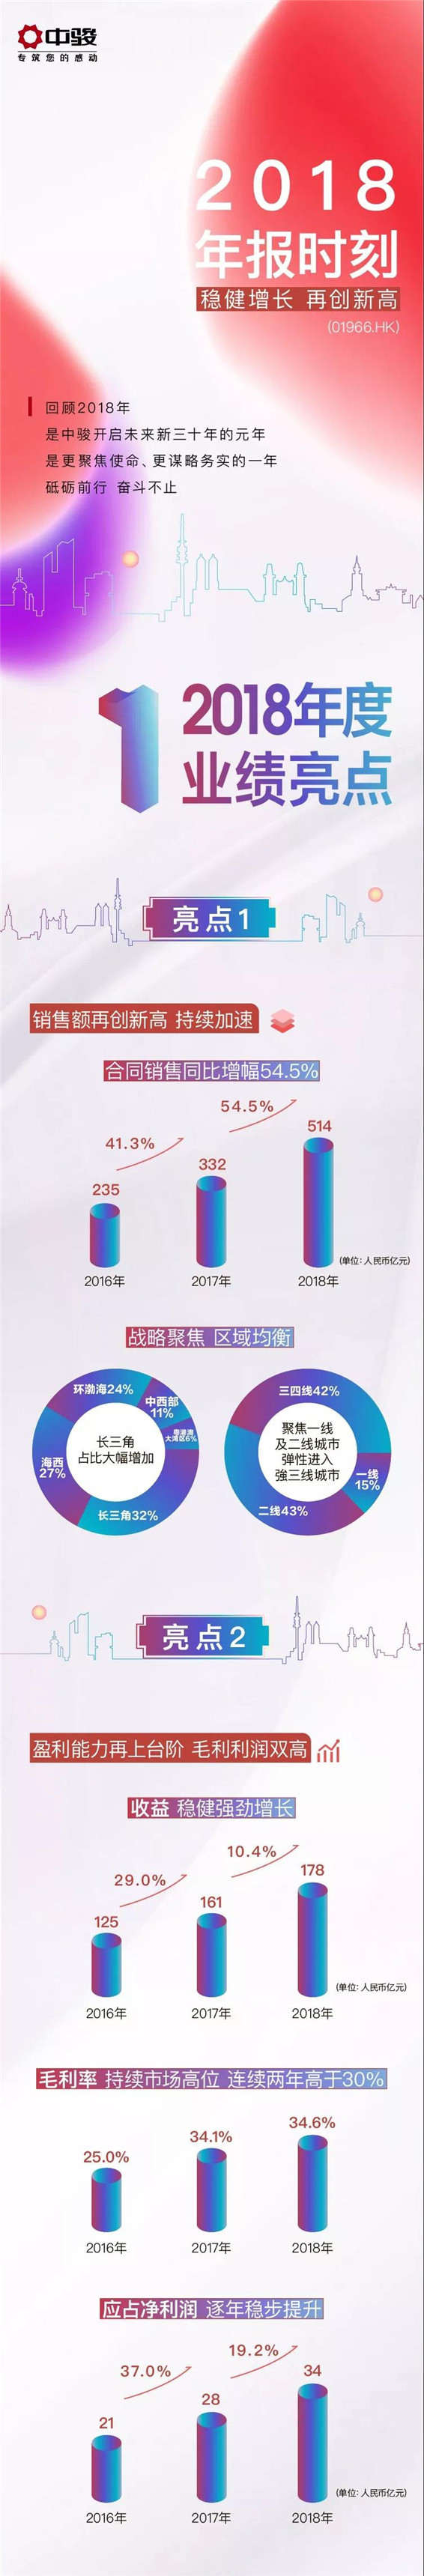 中骏年报时刻丨2018合同销售大涨54.5%，新增人民币1200亿货值，净利润双攀升！